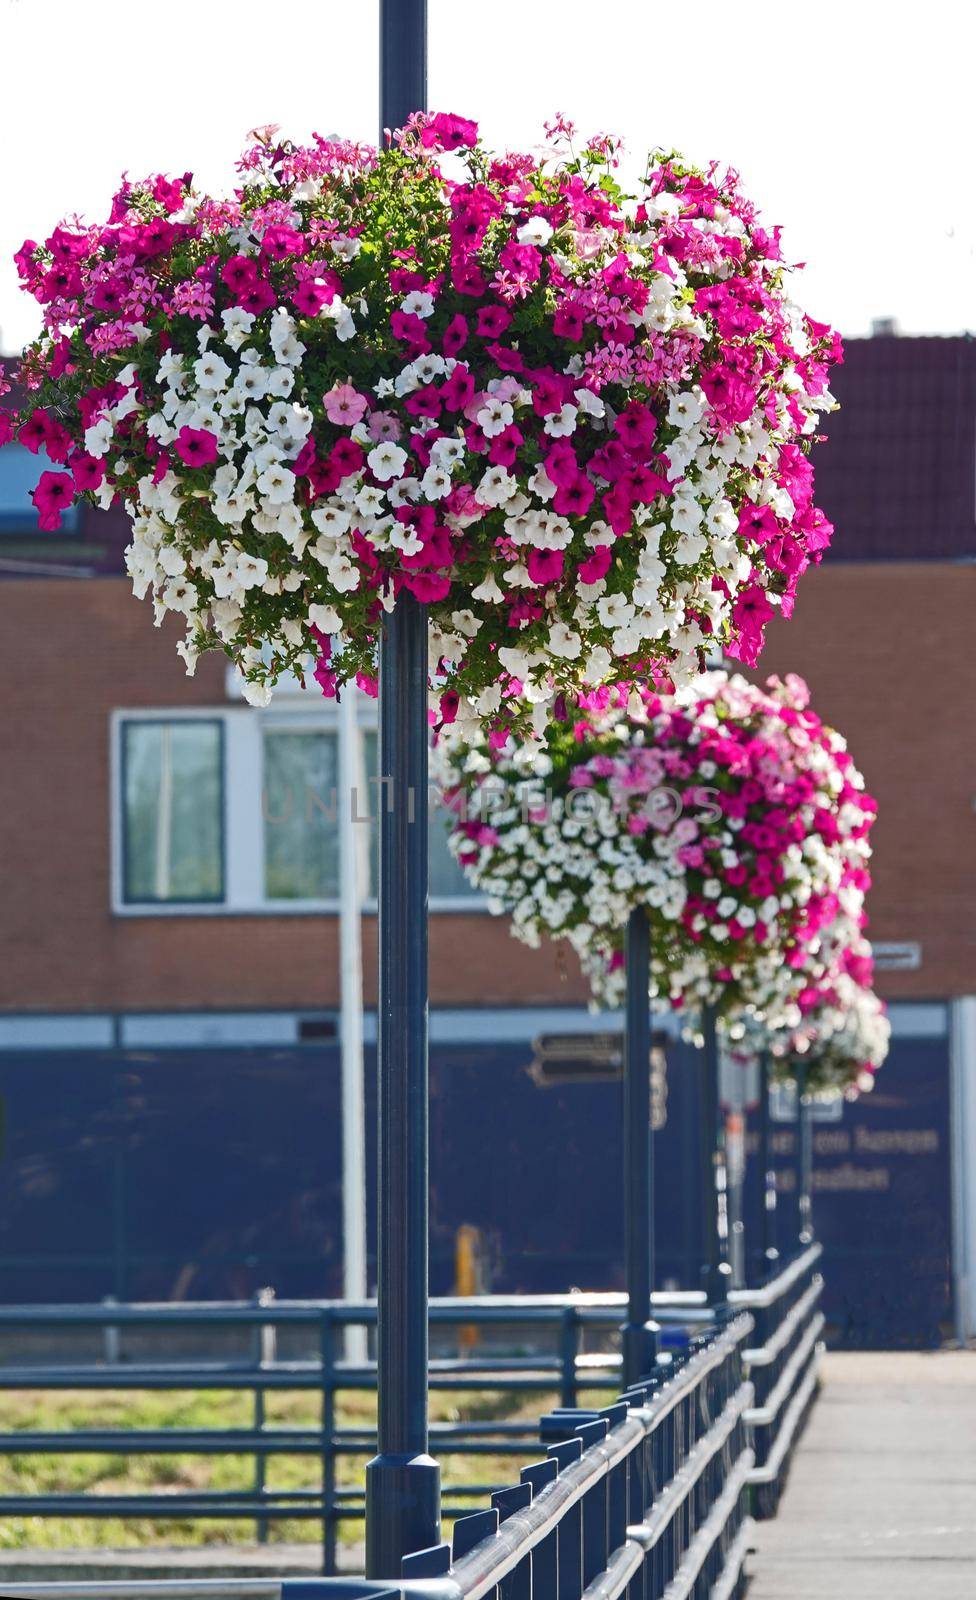 Flower baskets on lamp posts by WielandTeixeira